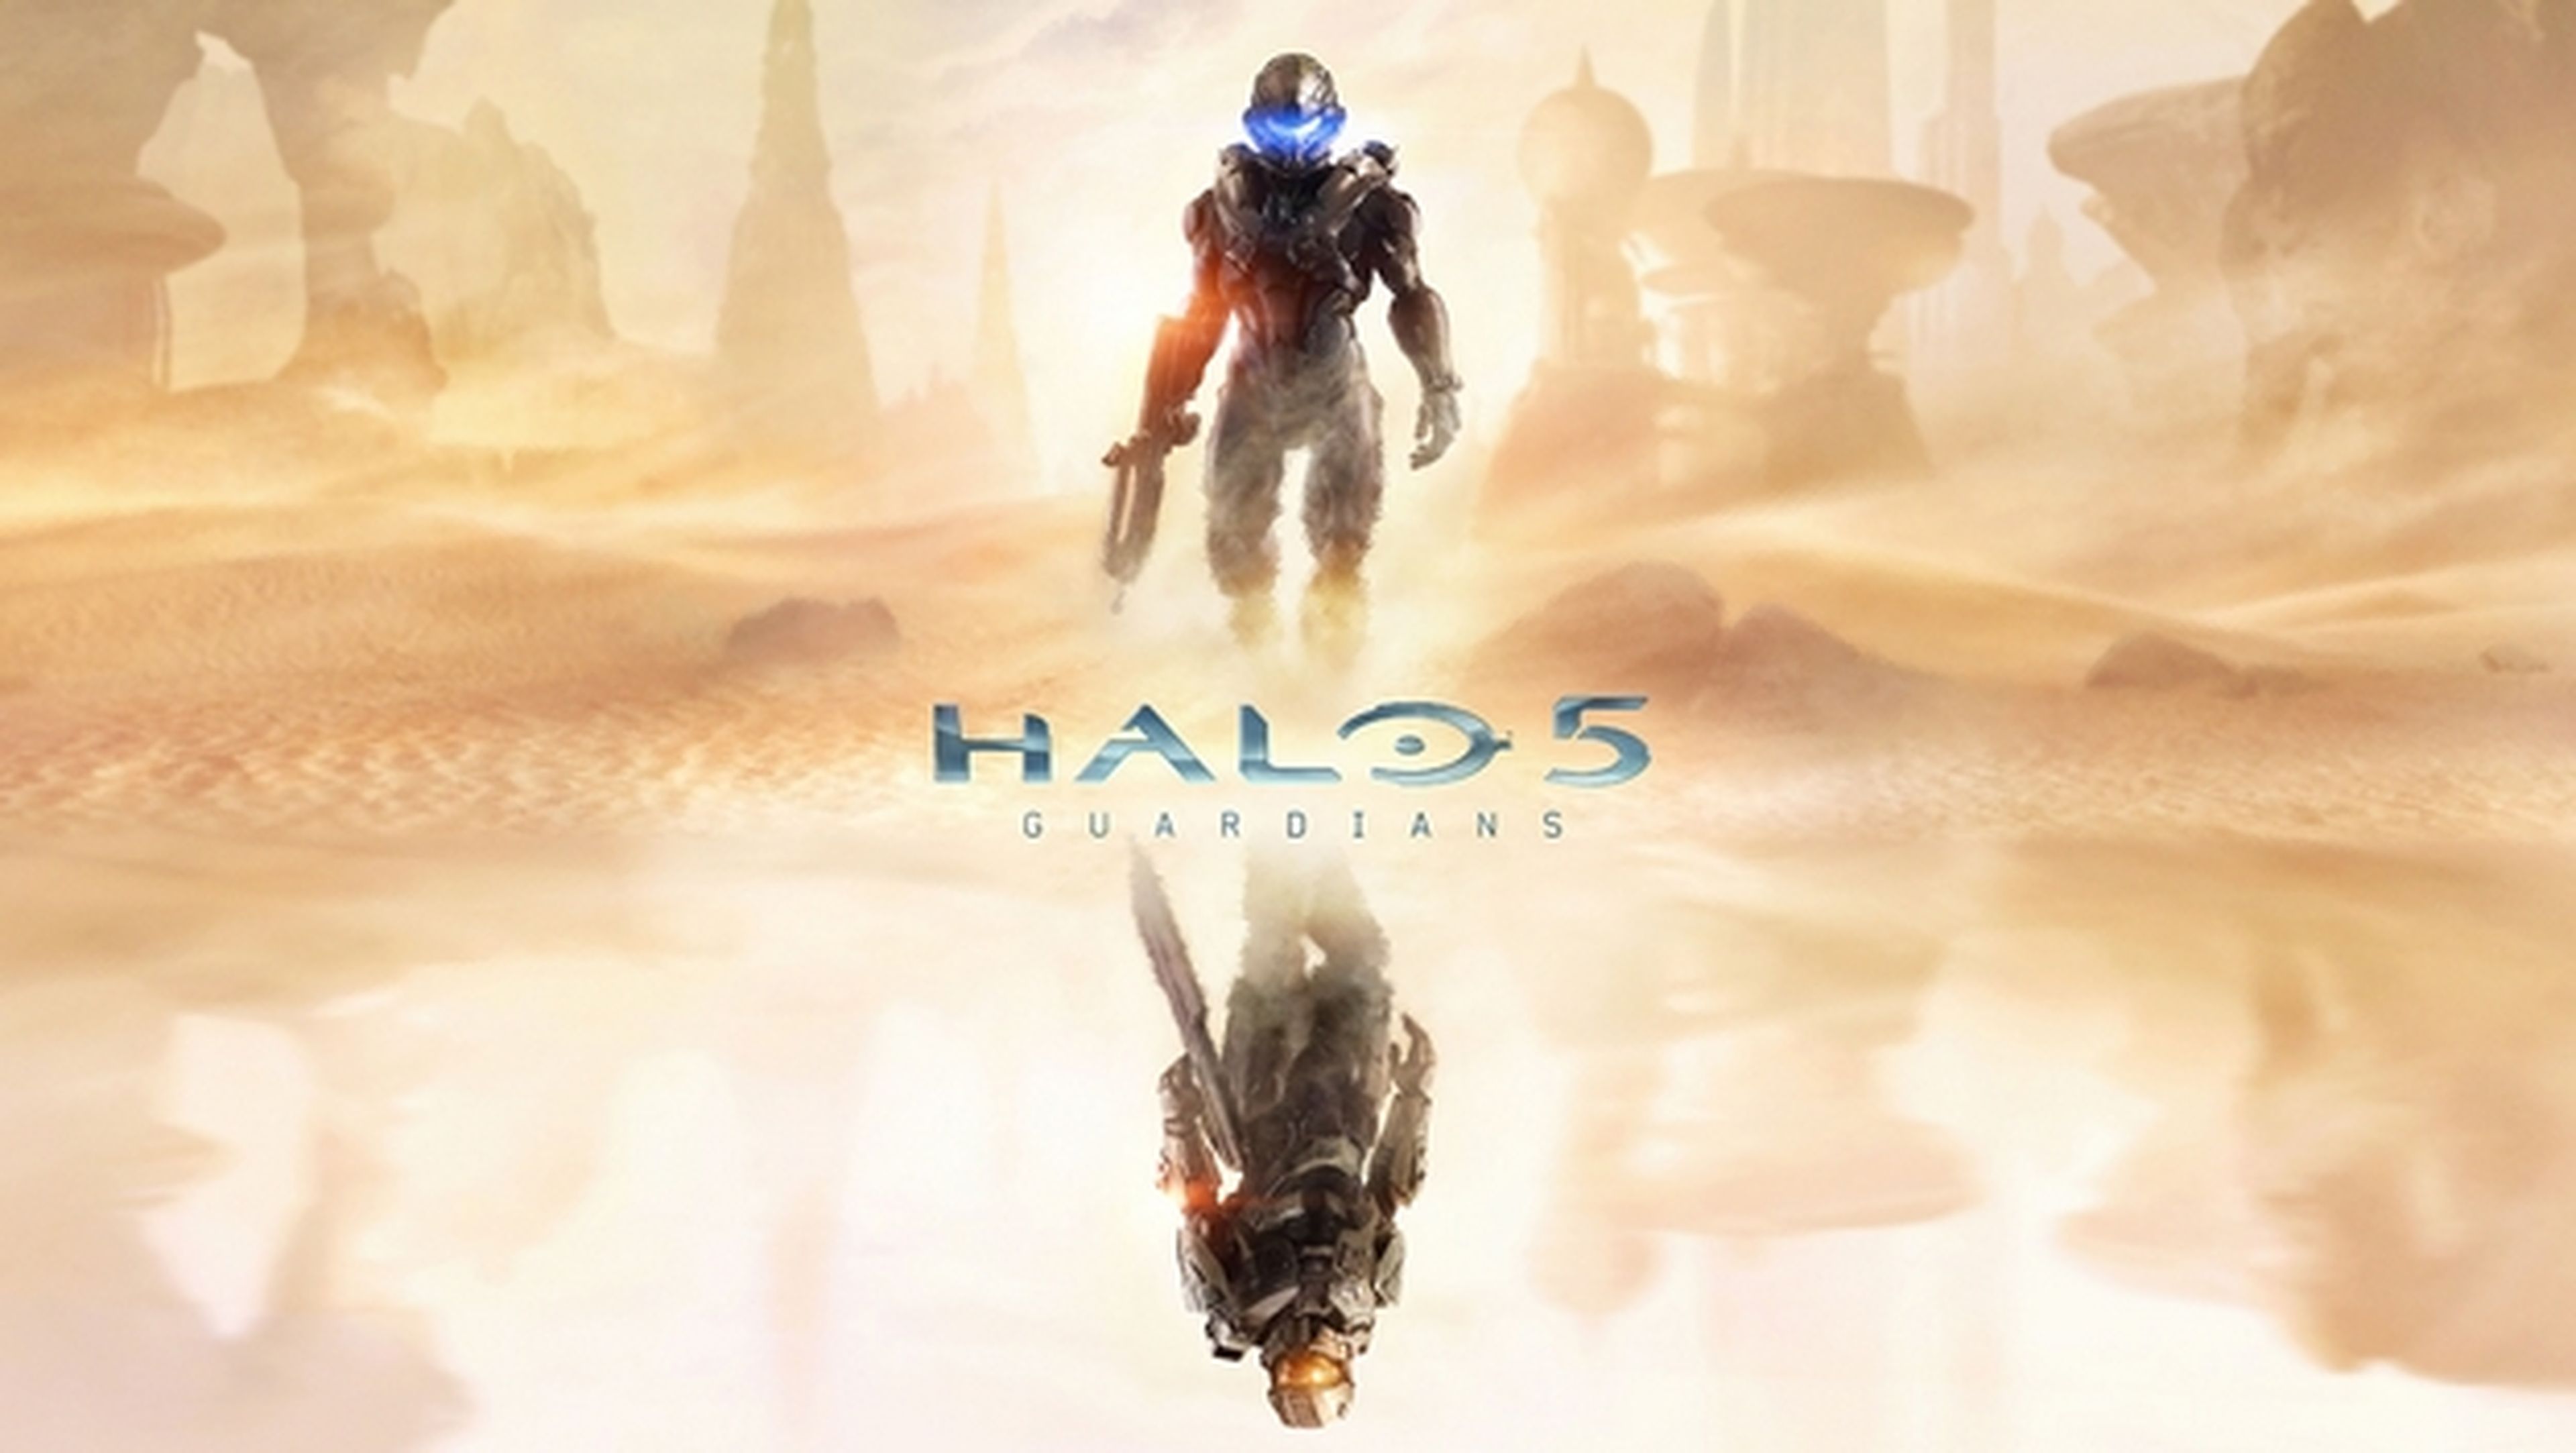 Halo 5: Guardians para Xbox One, anunciado oficialmente, todos los detalles y la fecha de lanzamiento, prevista para otoño de 2015. La serie de televisión también se anuncia para el año que viene.